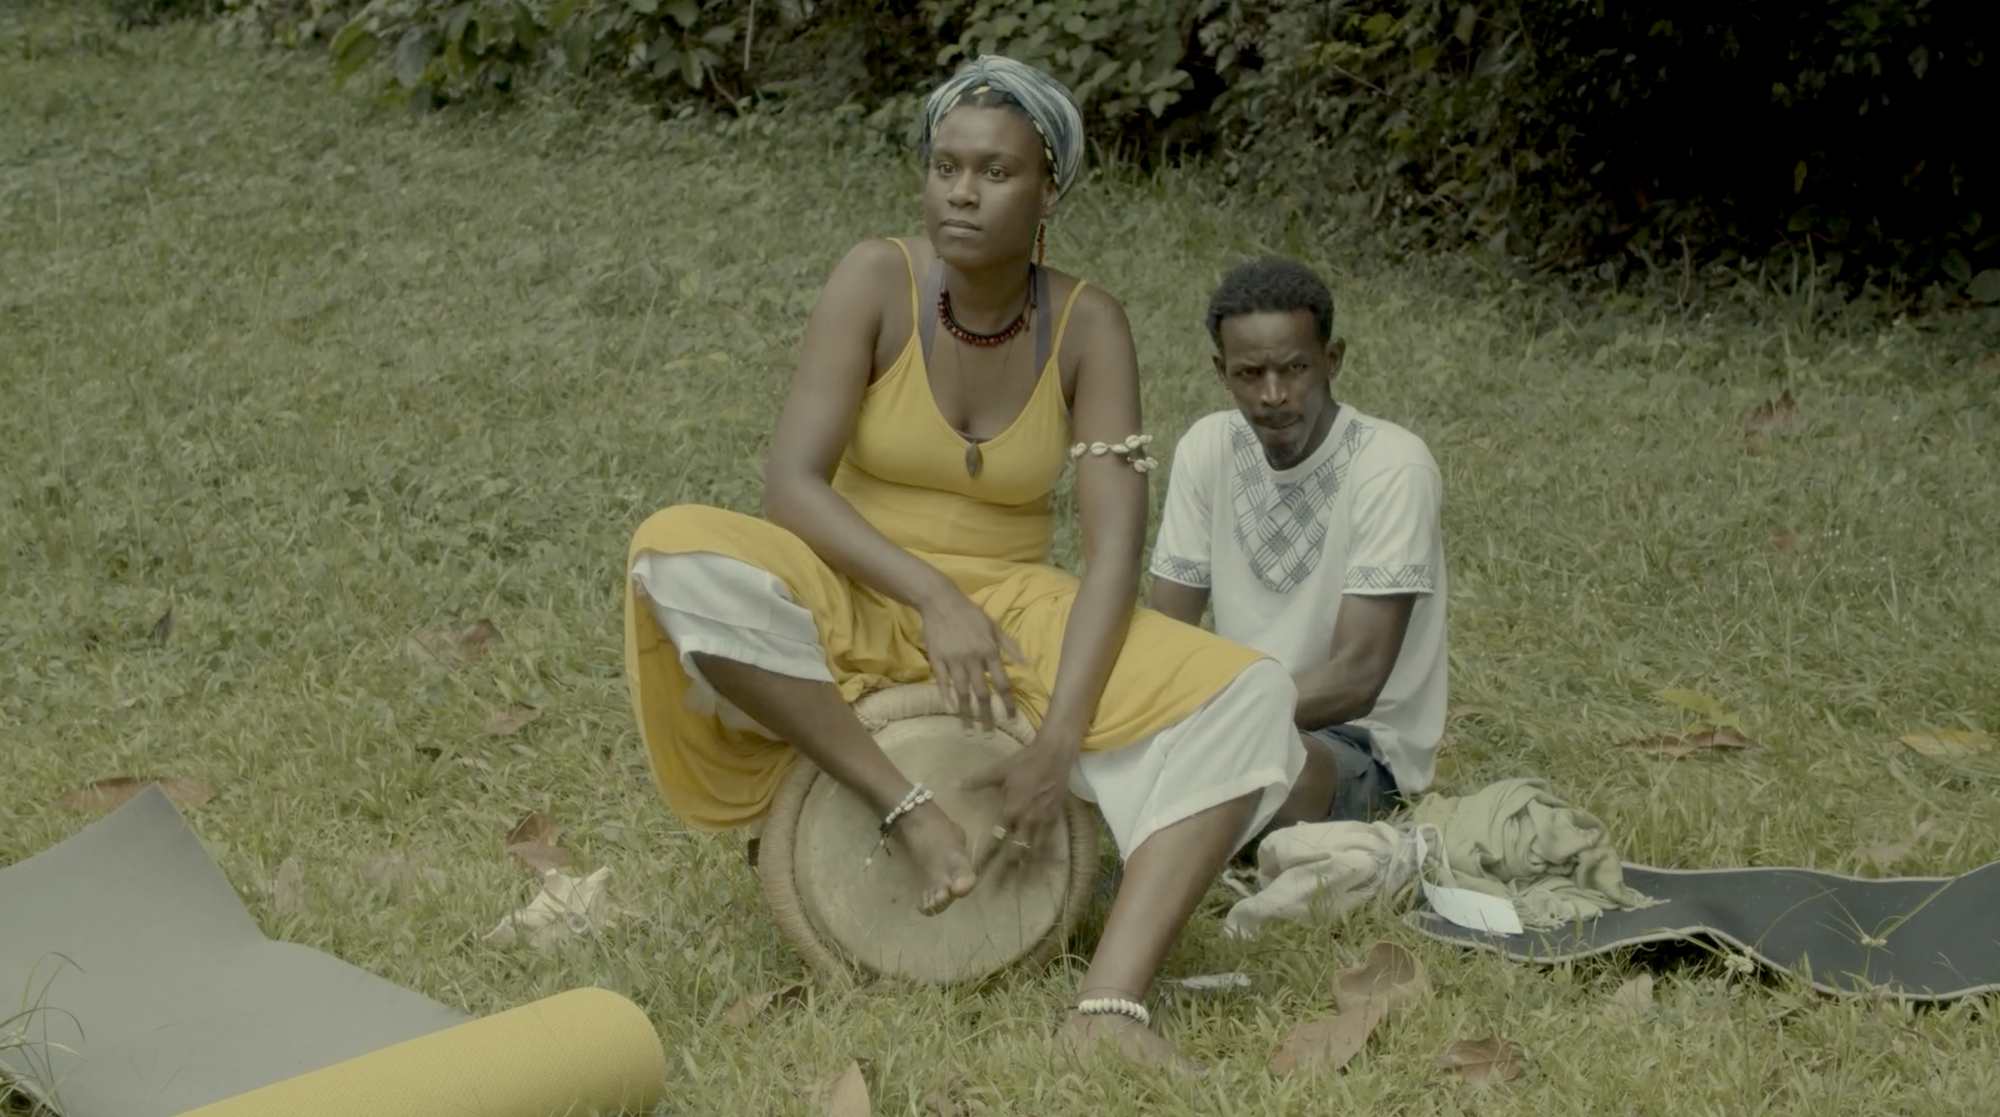     « Mantjé tonbé sé viv », un documentaire sur la psychiatrie en Martinique

